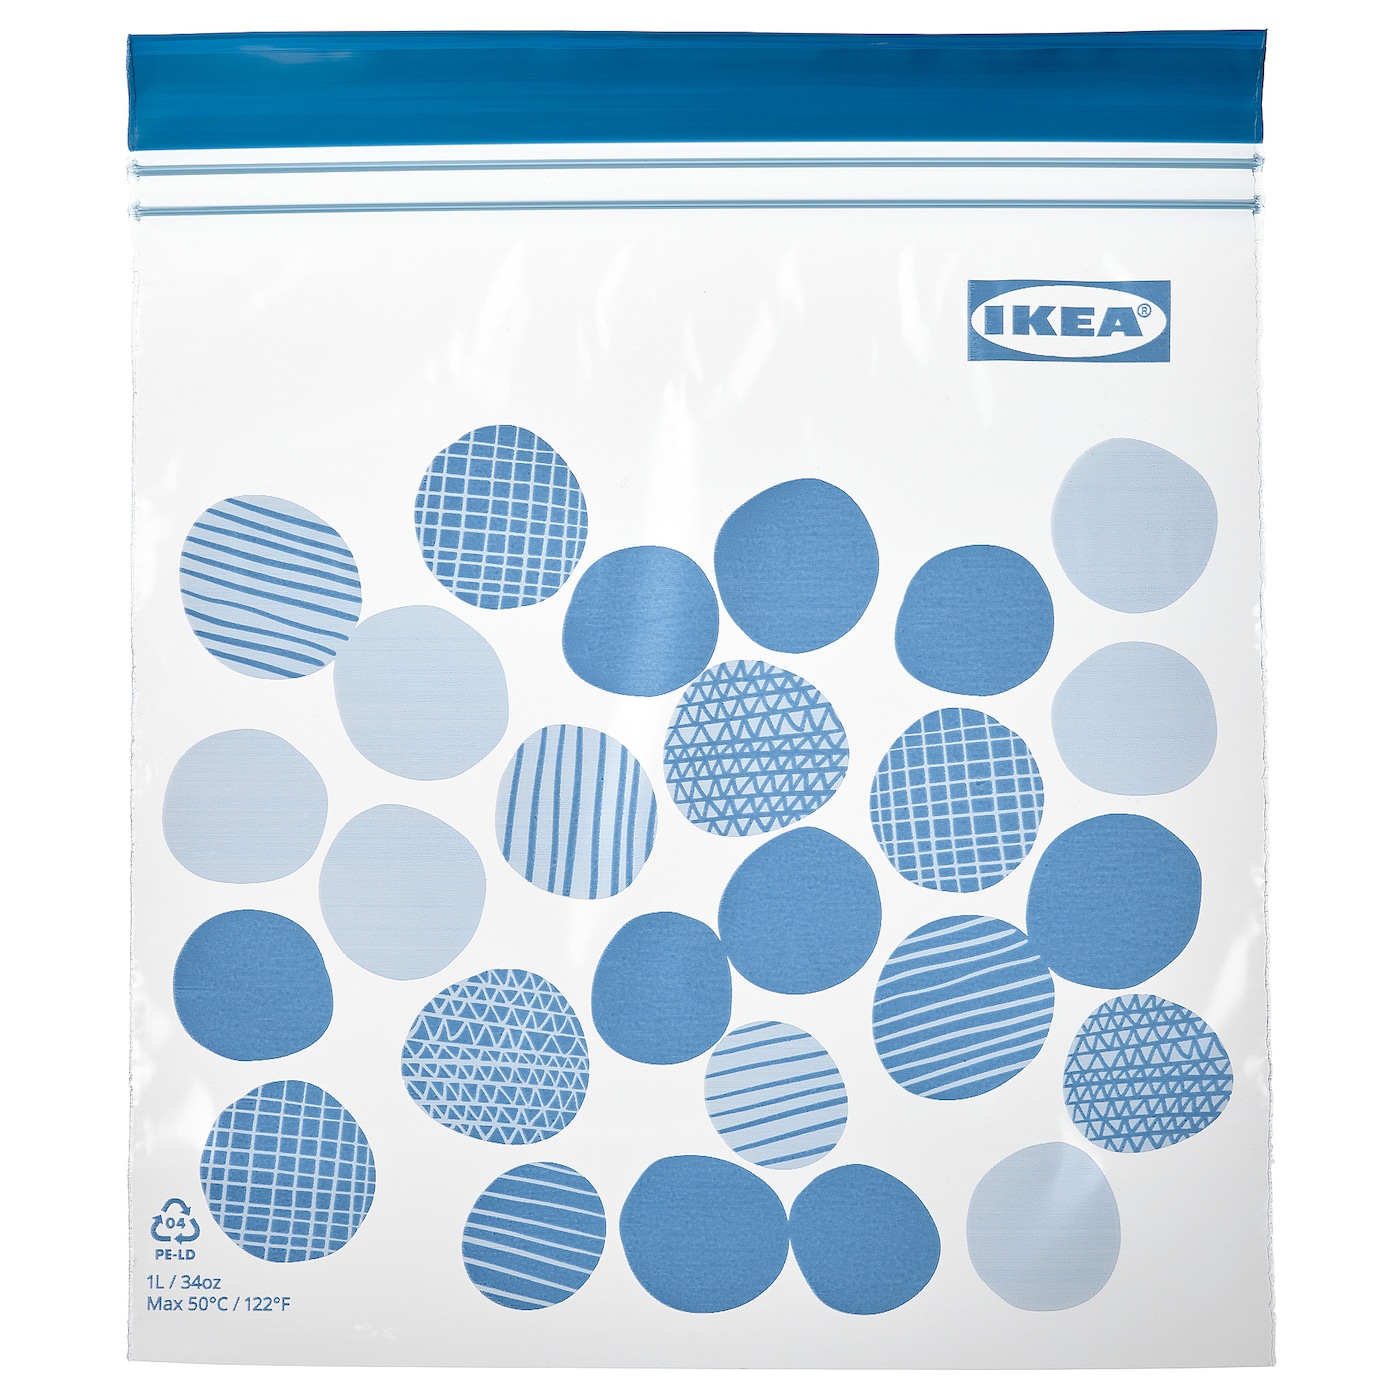 Пакет для продуктов, 25 шт. - IKEA ISTAD, 1 л, синий/голубой, ИСТАД ИКЕА